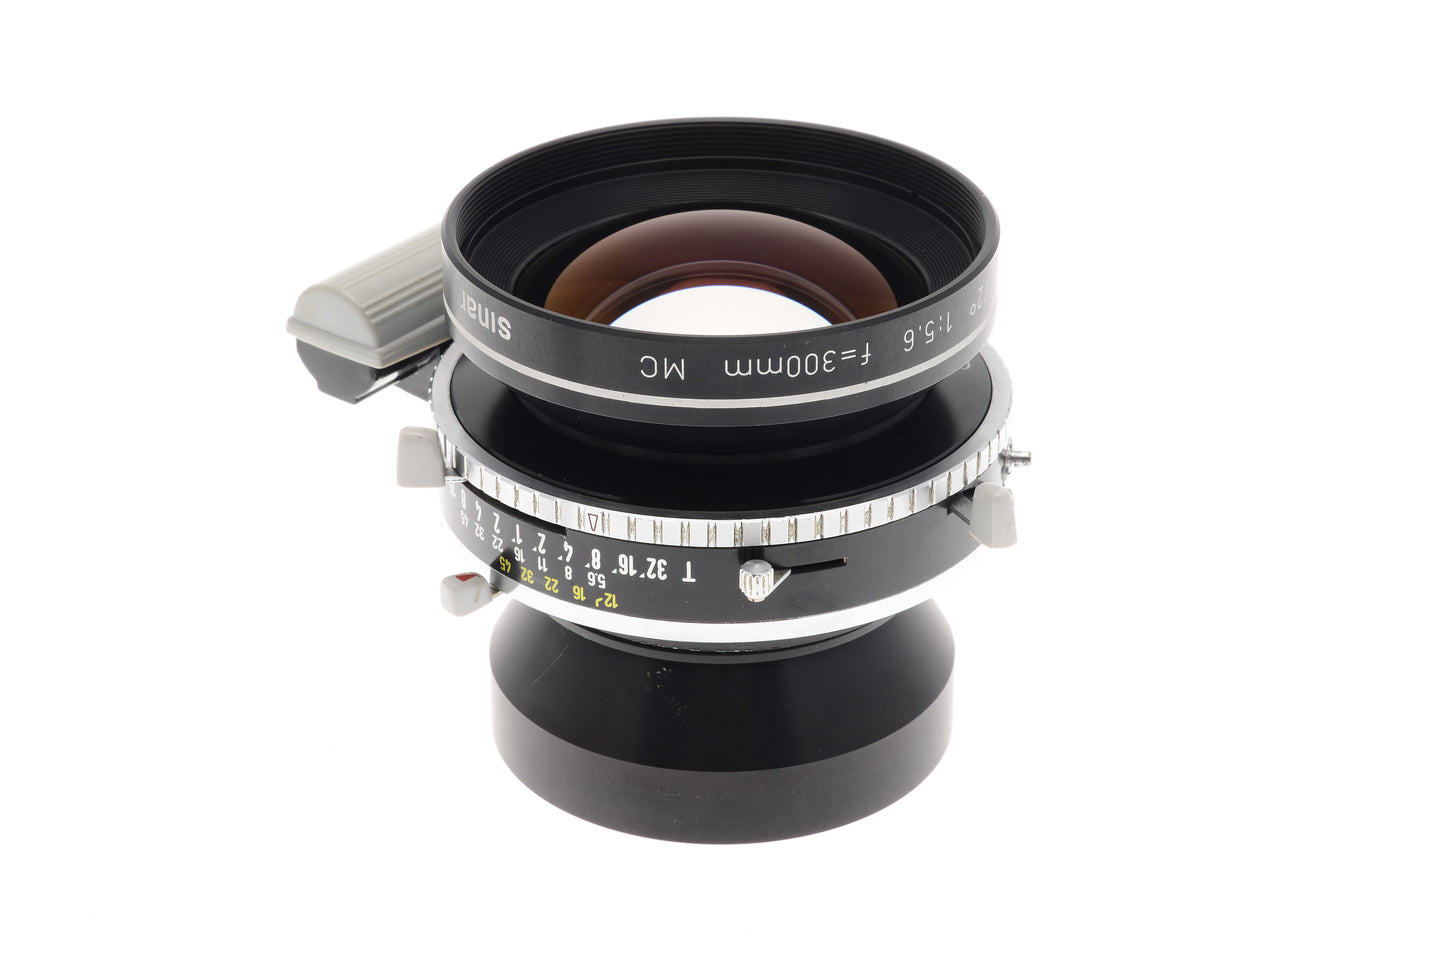 Rodenstock 300mm f5.6 Sinaron-S MC (Shutter) - Lens